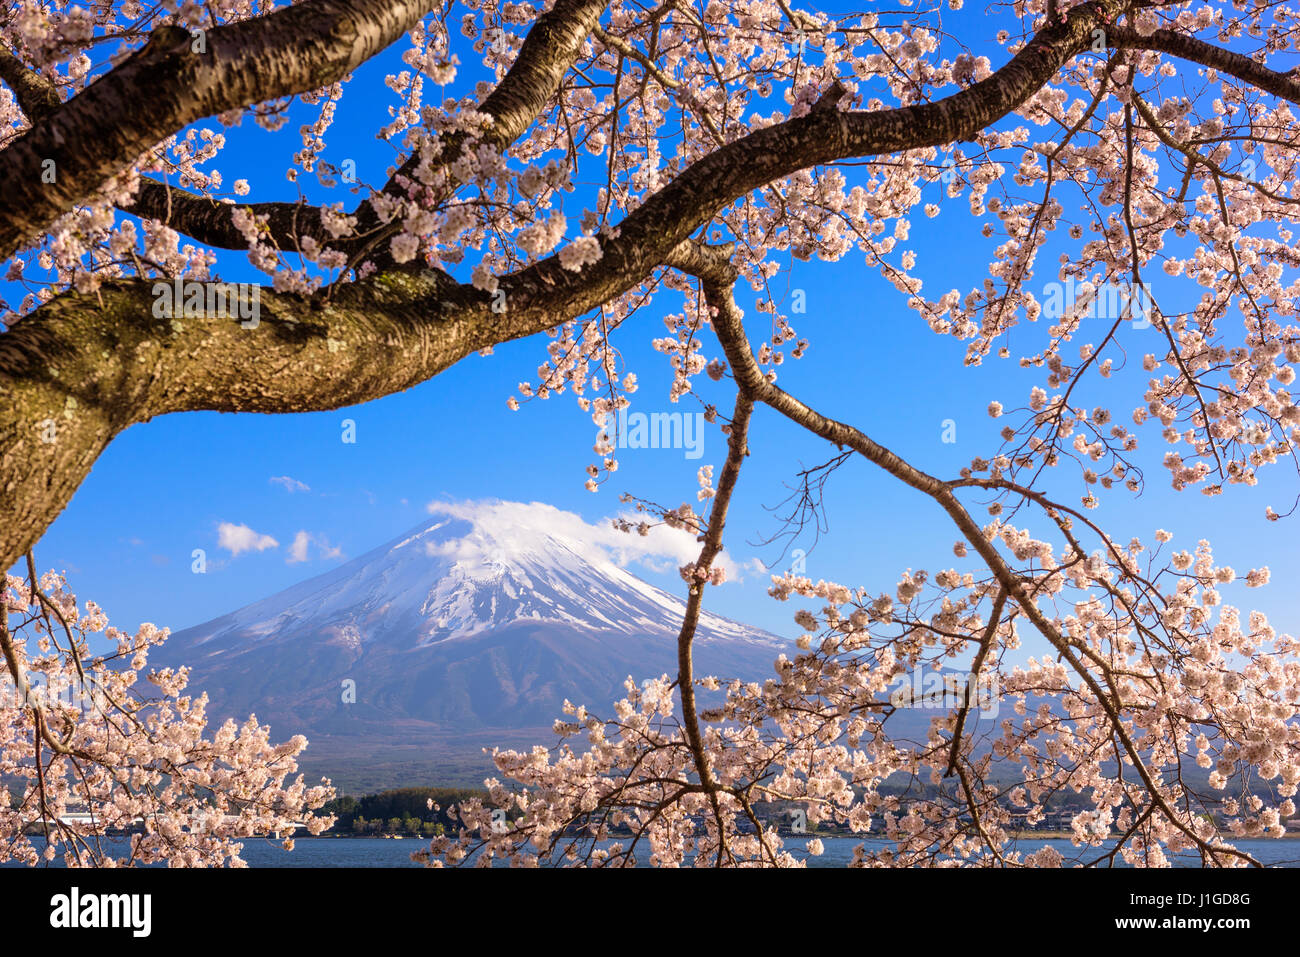 Kawaguchi Lake, Japan at Mt. Fuji with cherry blossoms in spring. Stock Photo